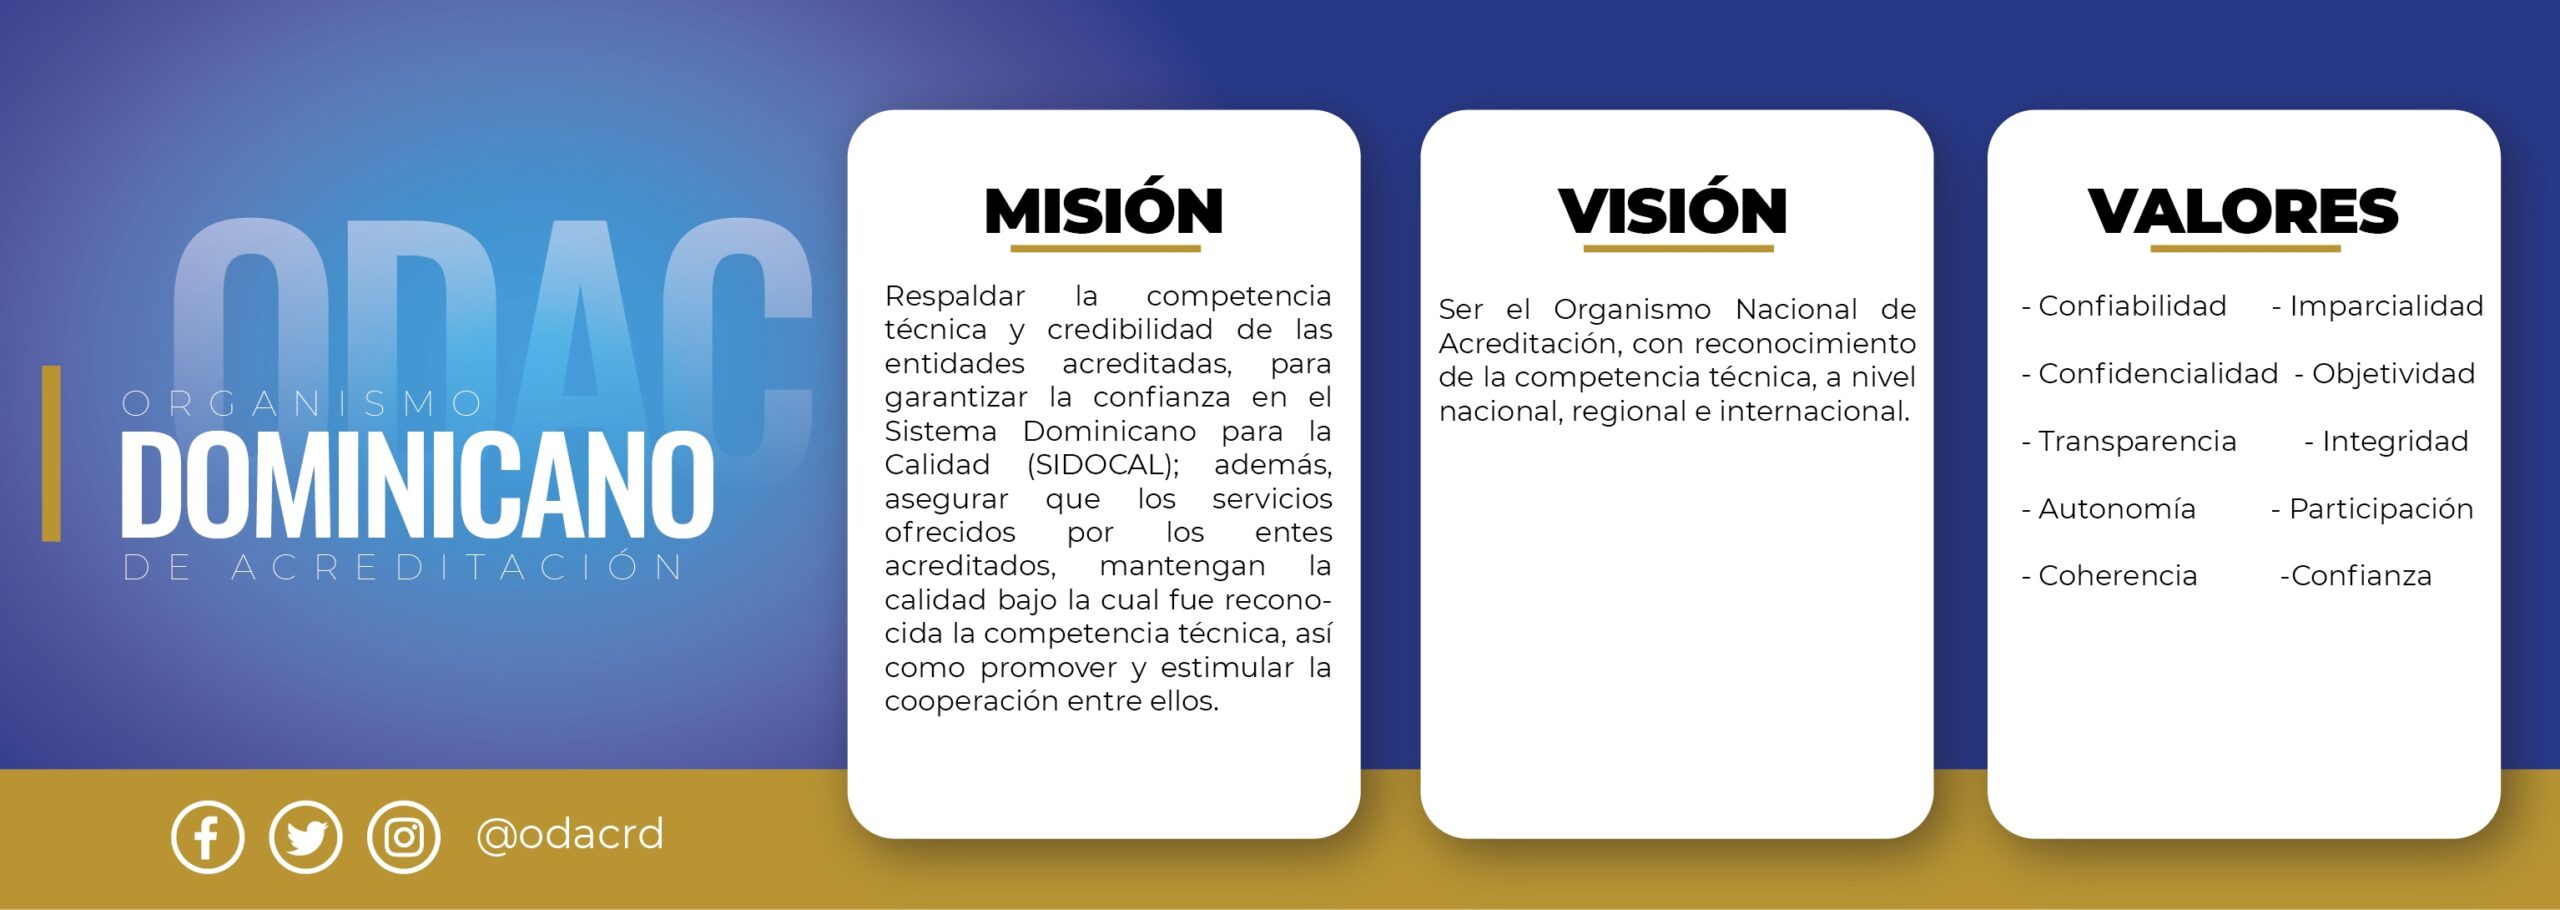 Mision vision y valores